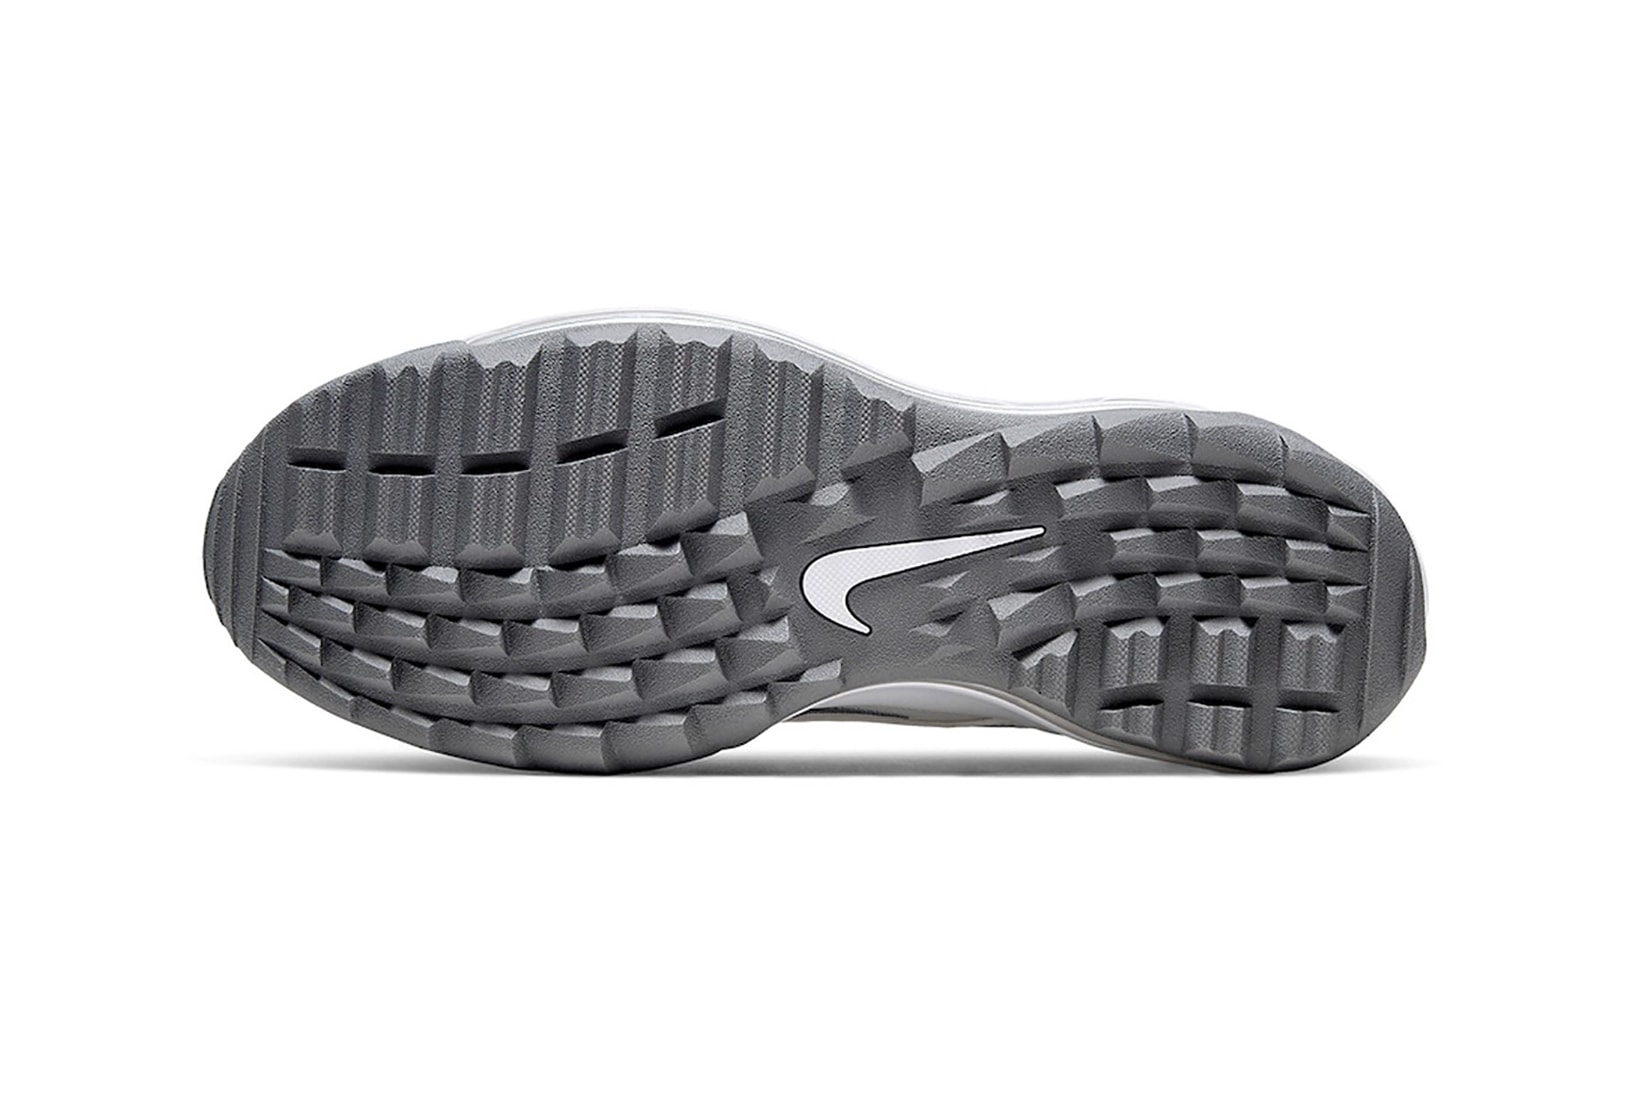 nike air max 97 g golf sneakers triple white colorway sneakerhead shoes footwear